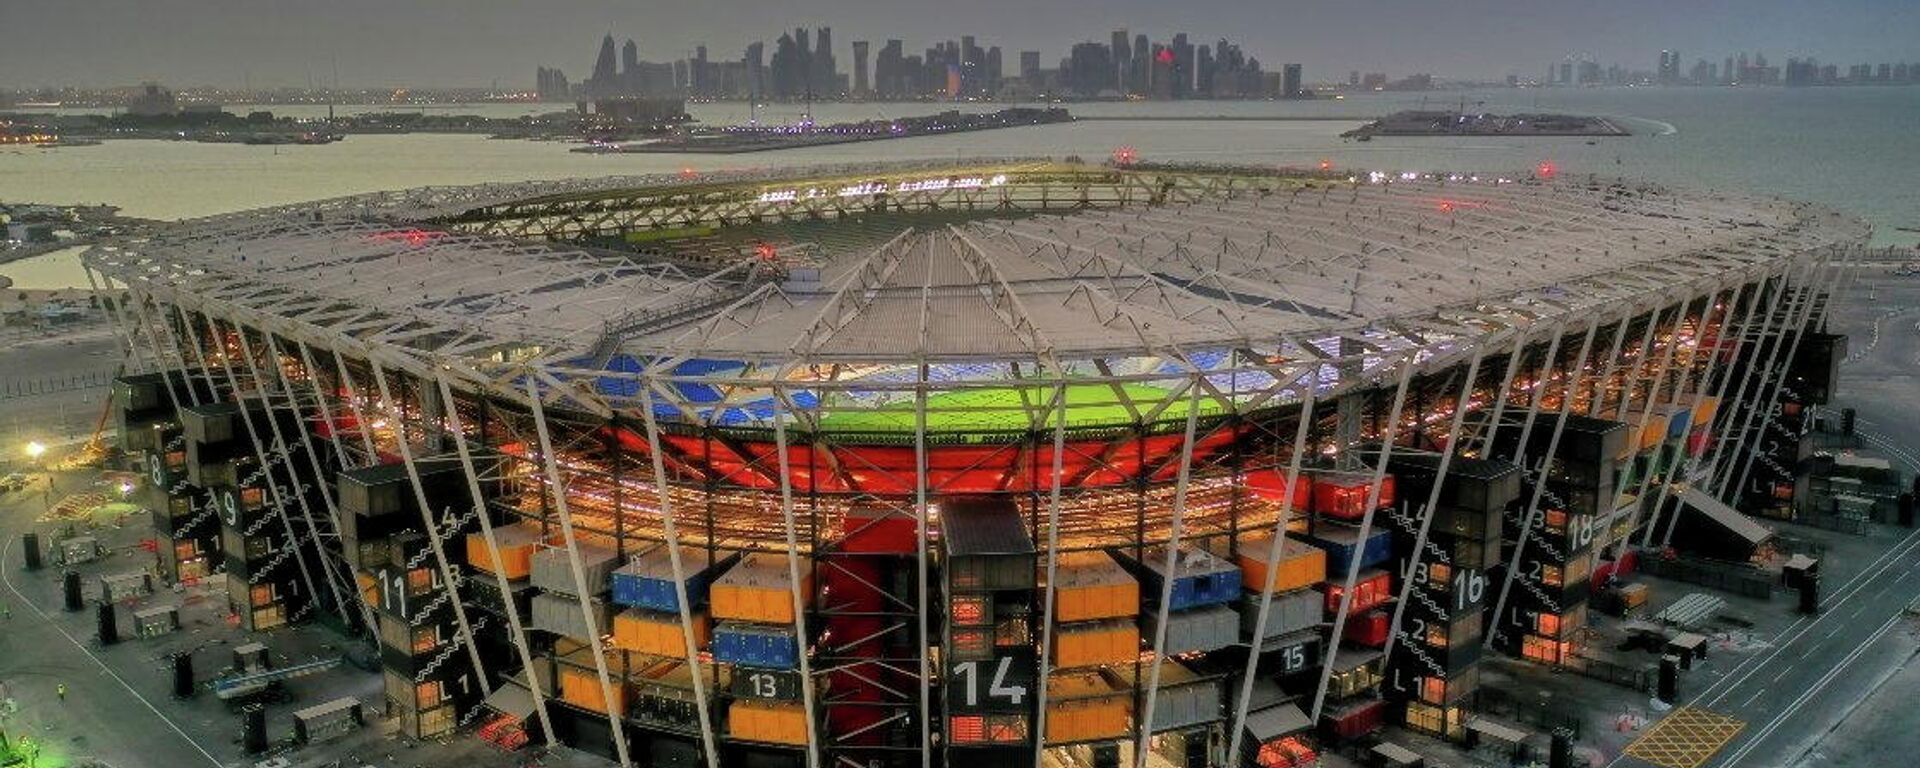 Estadio en Doha, Catar, donde se disputará la Copa del Mundo.  - Sputnik Mundo, 1920, 23.11.2021